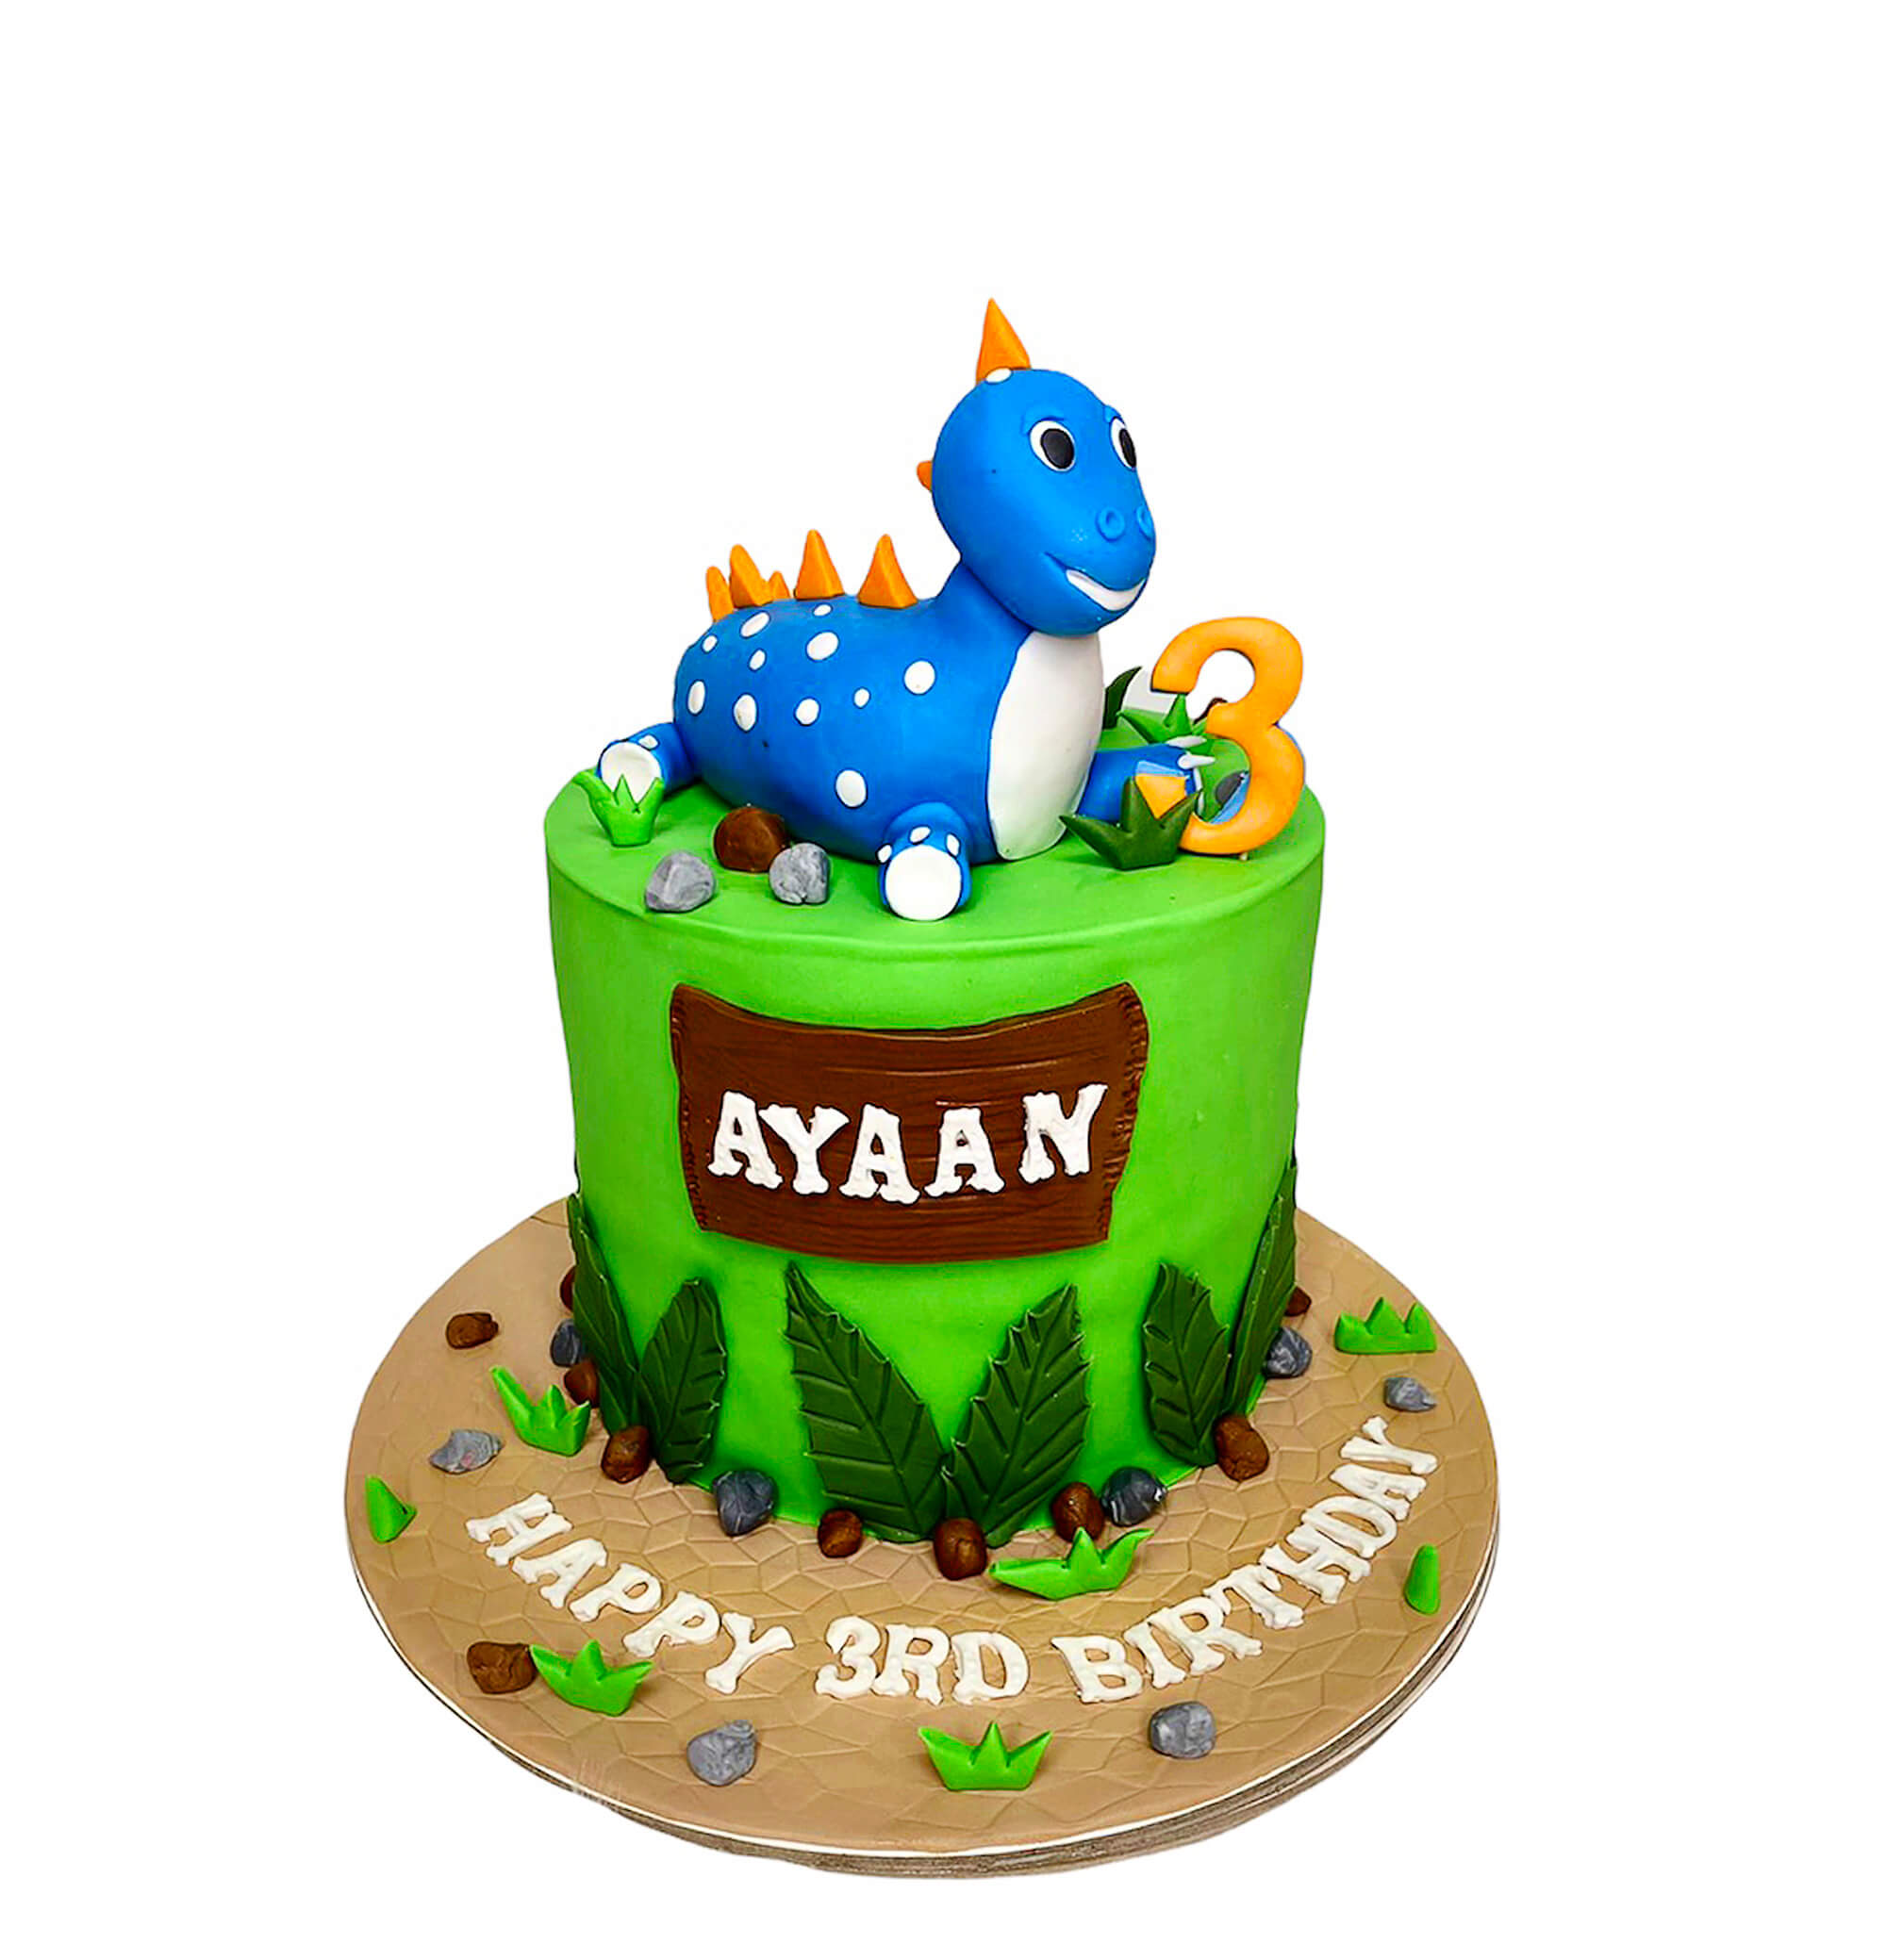 Cake Delivery in Ajman | Birthday Cakes in Ajman | Wedding Cakes in Ajman |  photo cakes in Ajman| Kids cakes in Ajman | Quality cakes in Ajman |  Customized cakes in